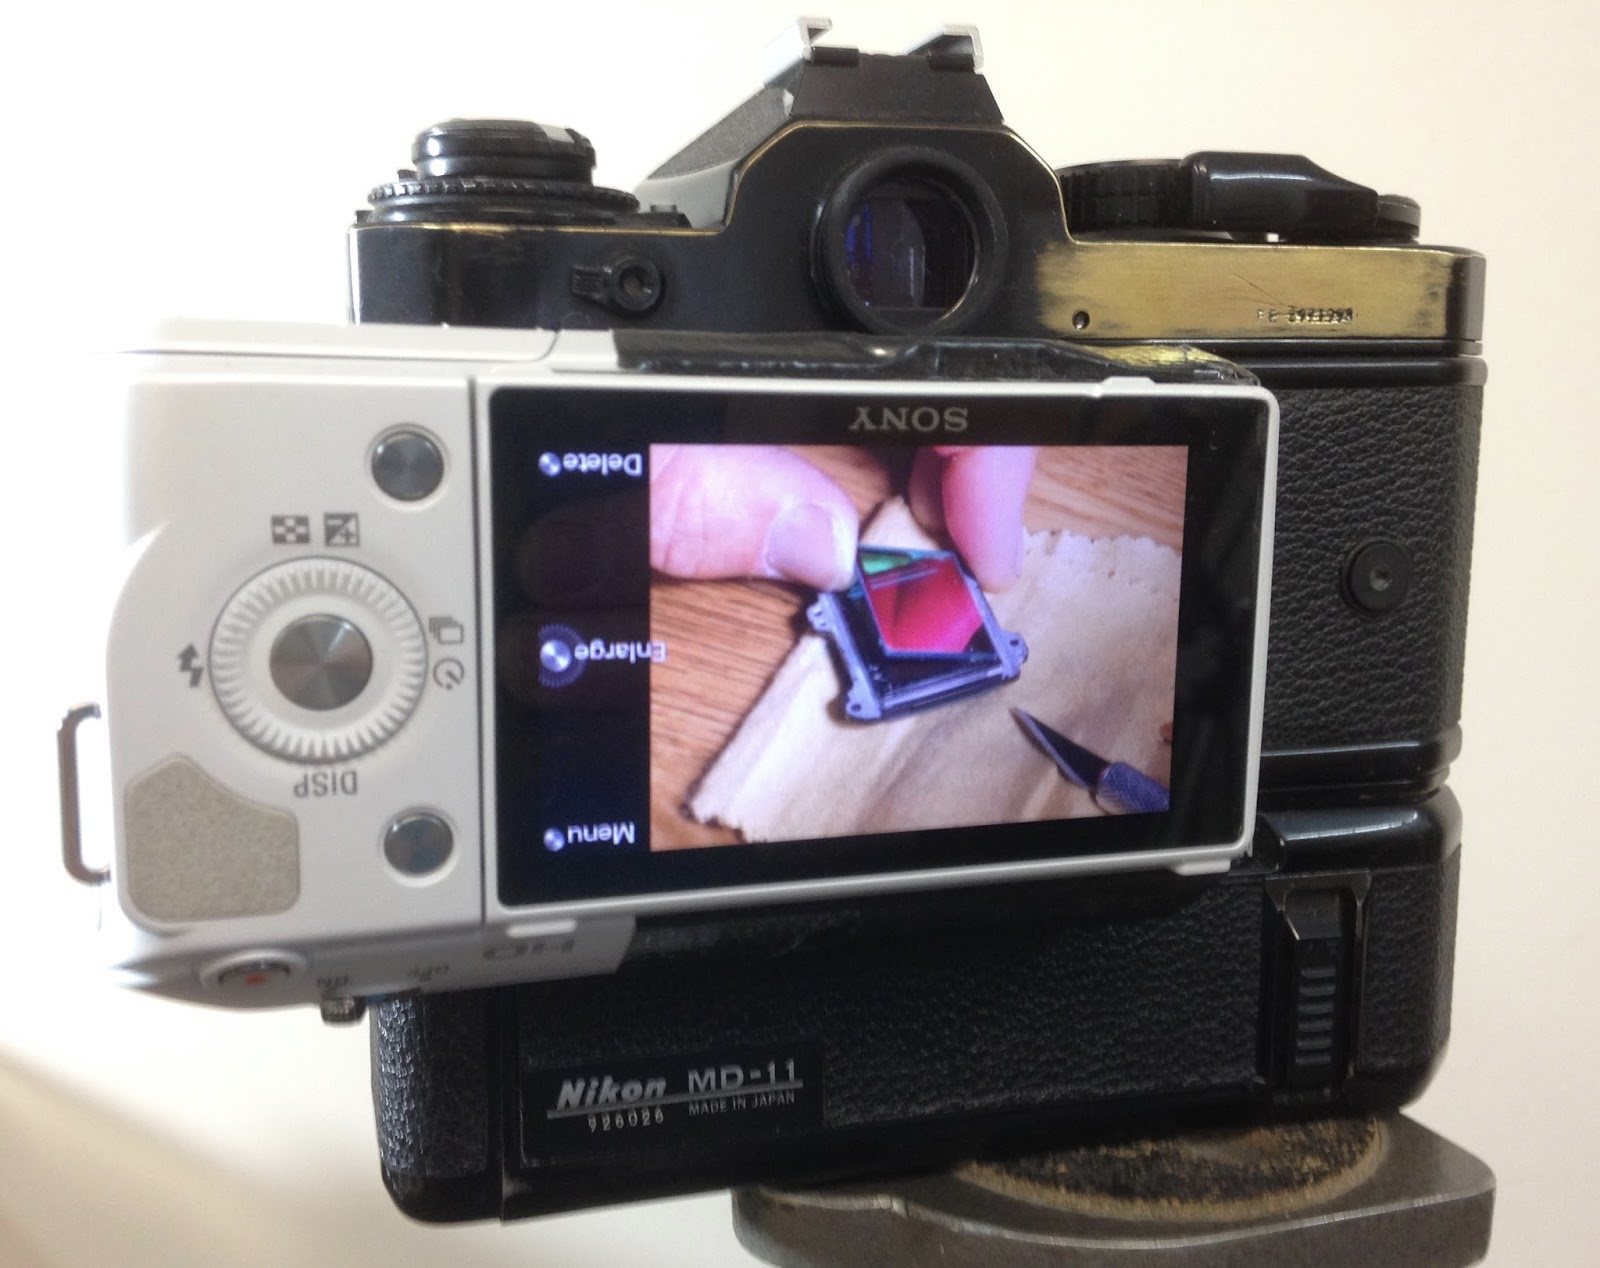 Esta cámara es una réflex analógica de las de antes, pero tiene Bluetooth